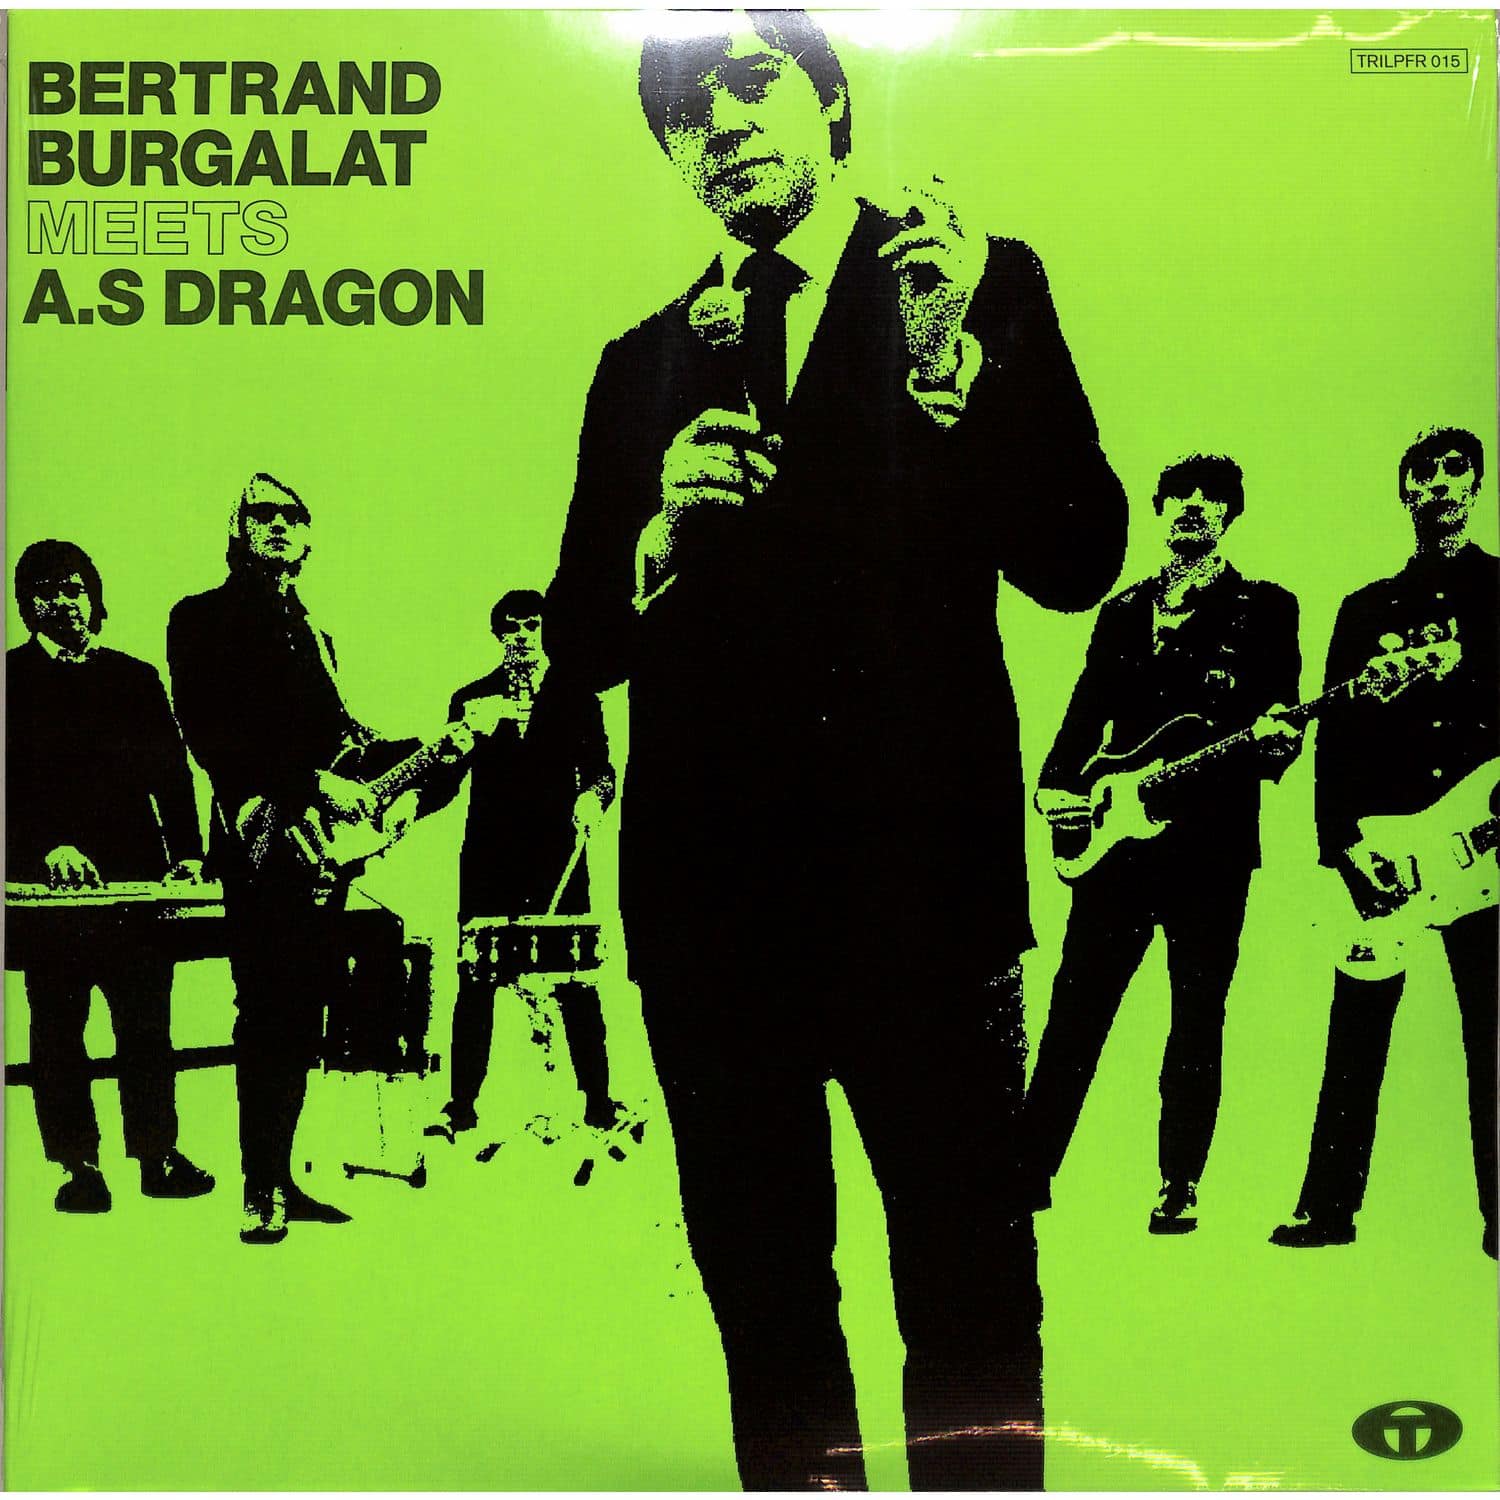 Bertrand Burgalat meets As Dragon - ALBUM LIVE 